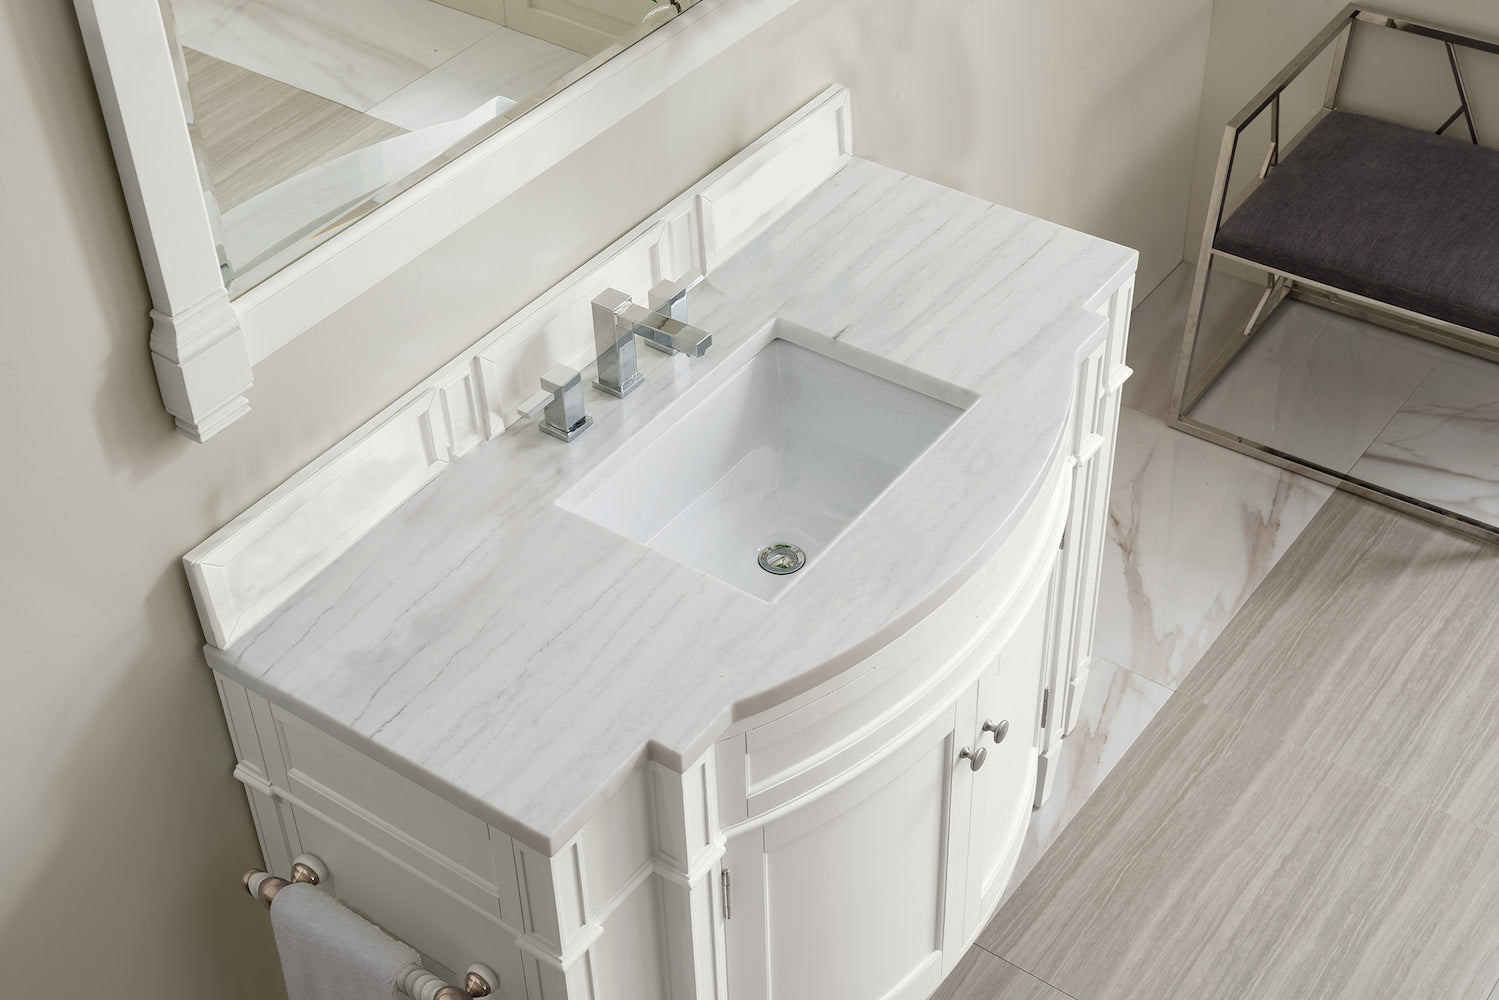 46" Brittany Single Bathroom Vanity, Bright White